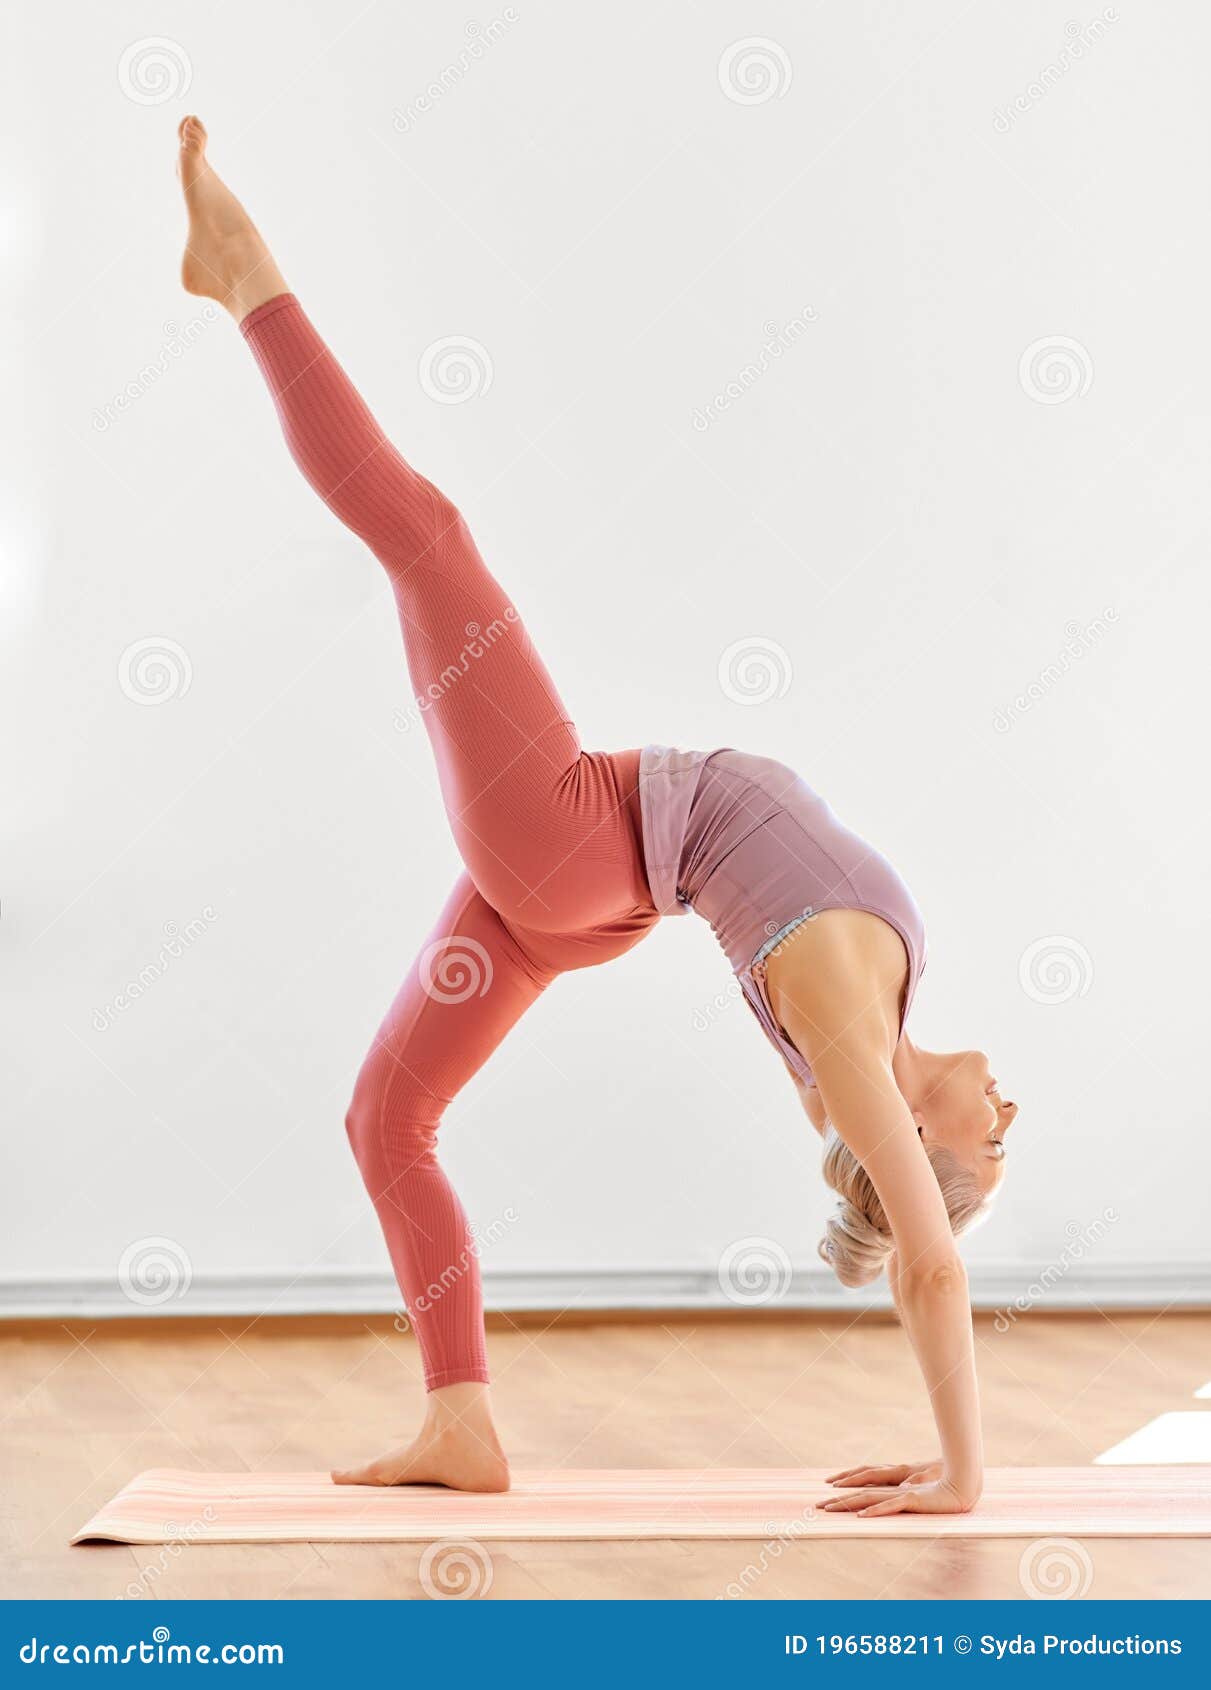 5 Yoga Poses (Stretches) For Tight Hip Flexors - Argentina Rosado Yoga